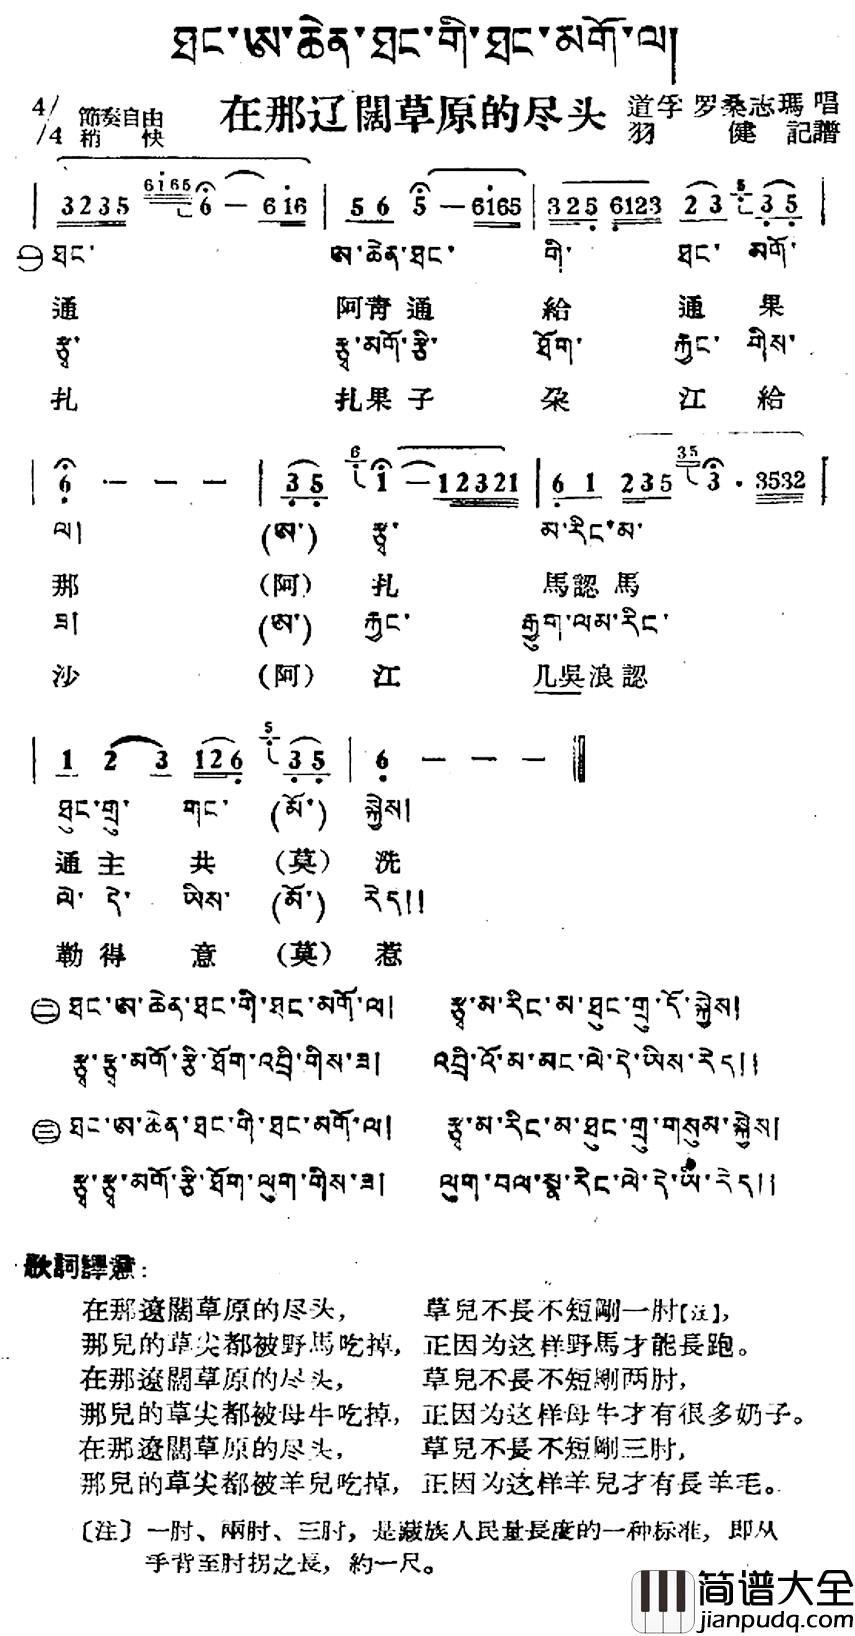 在那辽阔草原的尽头简谱_藏族民歌、藏文及音译版